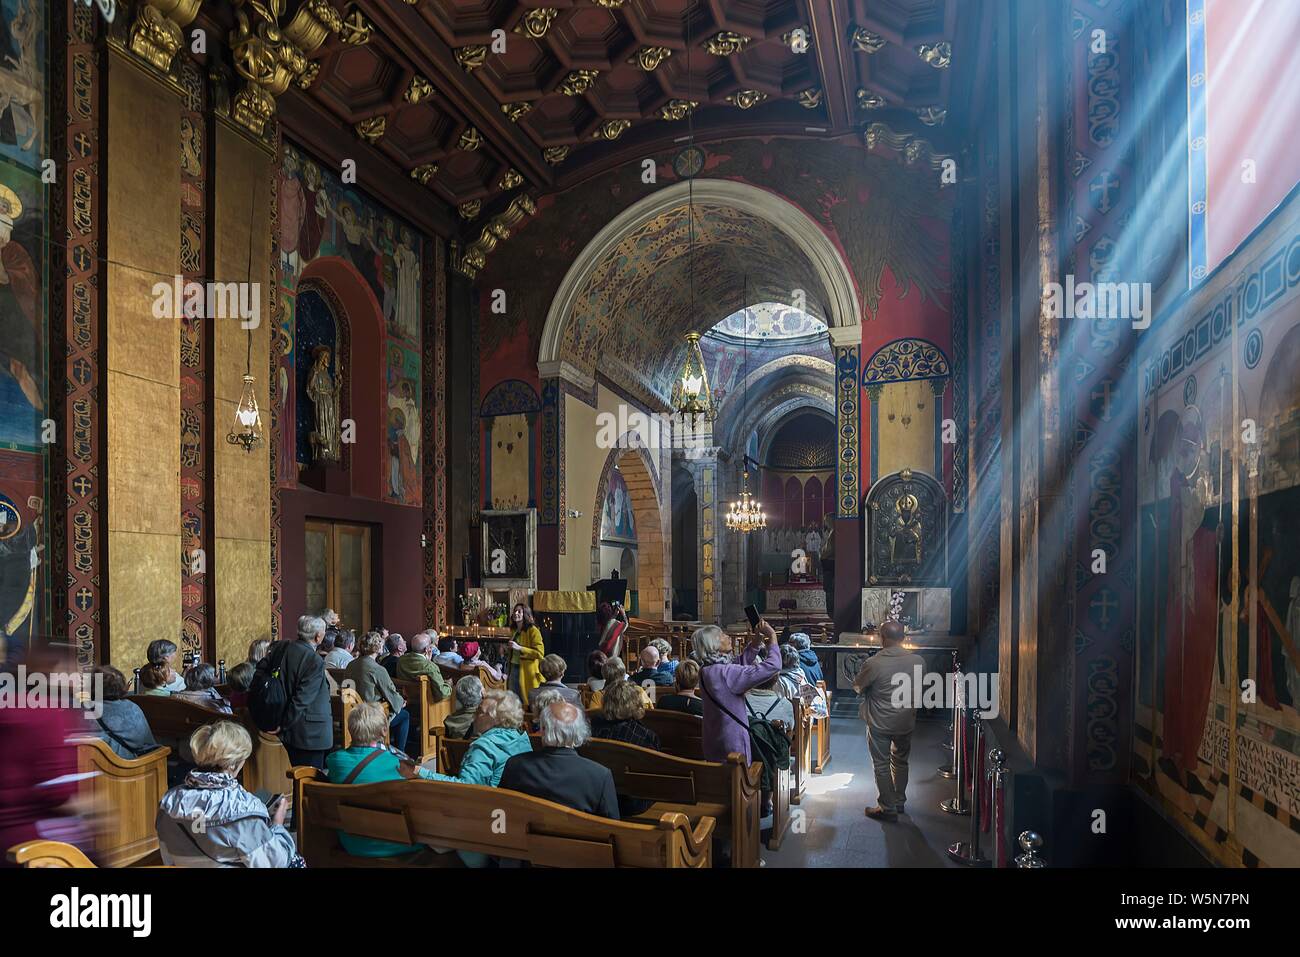 Travel Group in das Heiligtum, die armenische Kathedrale, Lemberg, Ukraine Stockfoto